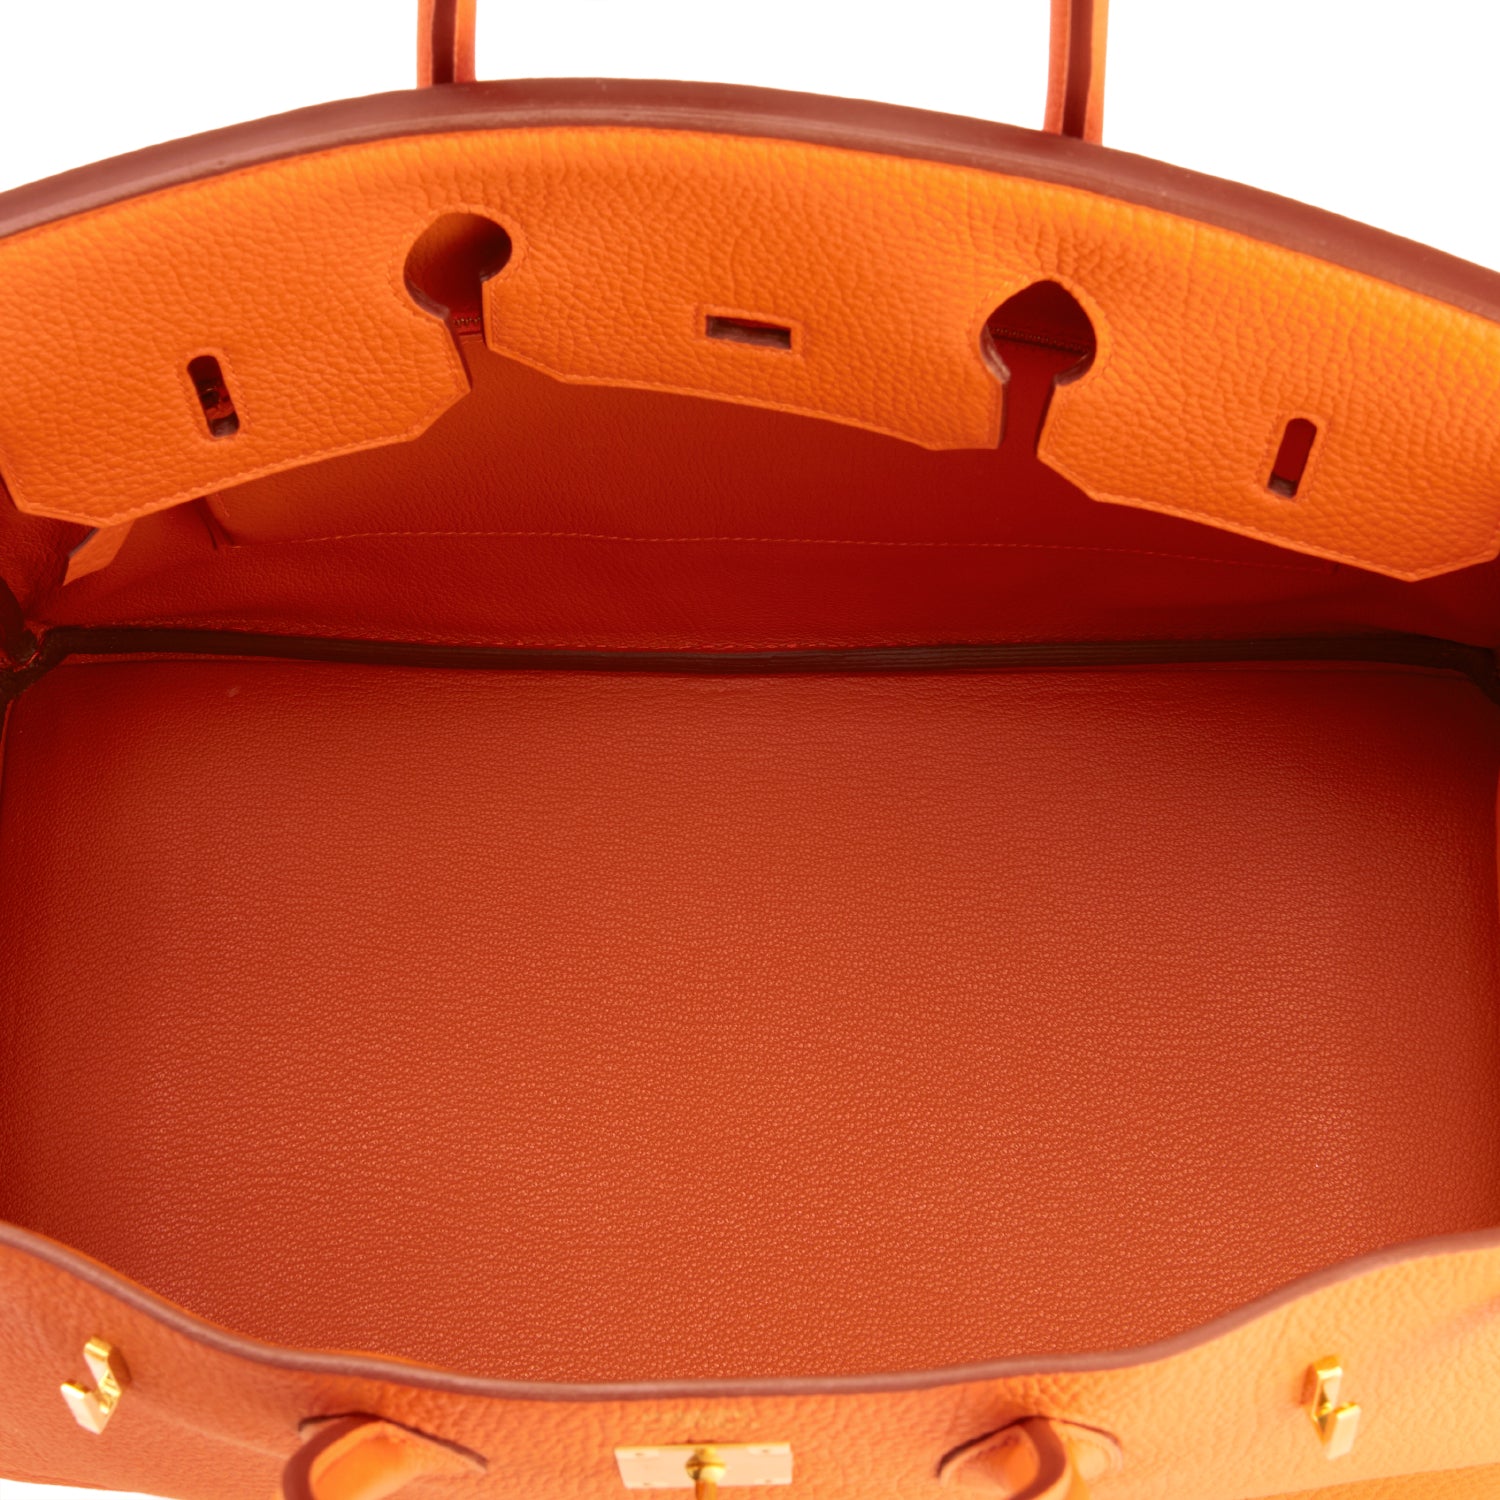 Hermes Birkin Bag, Orange, 35cm, Togo with gold